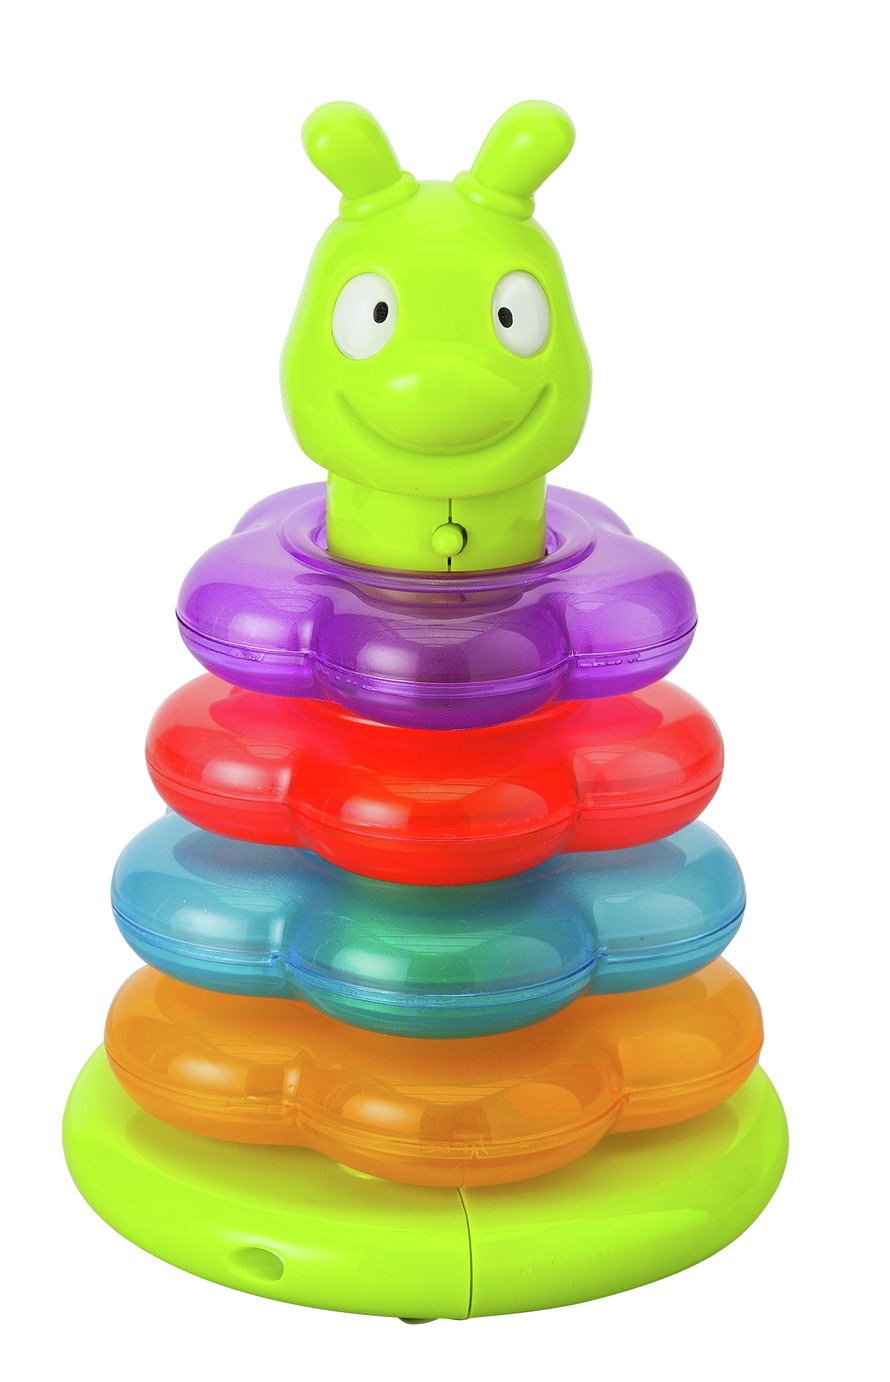 stacking toys argos